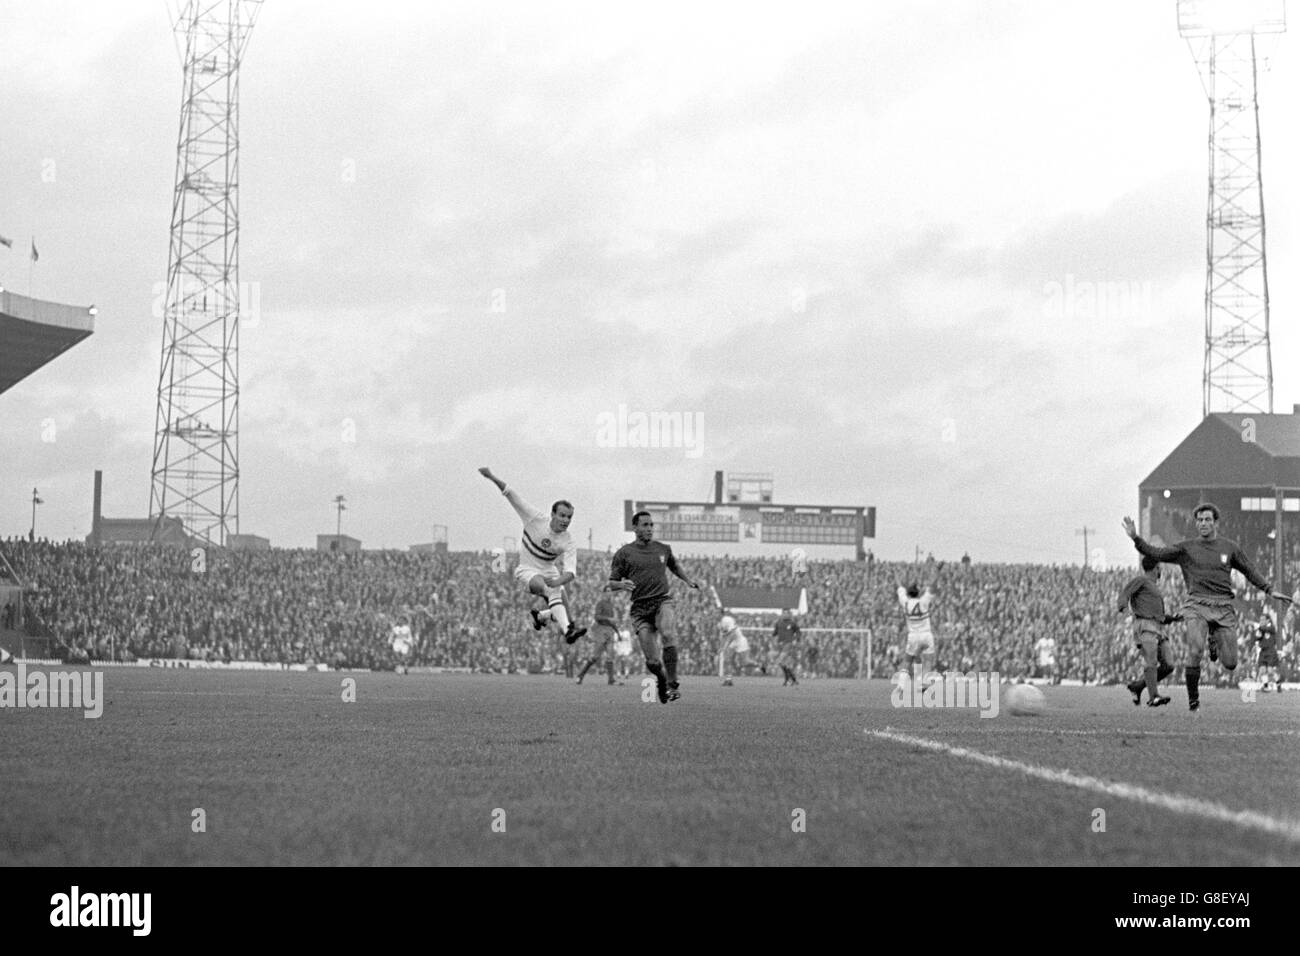 Calcio - Coppa del mondo Inghilterra 1966 - Gruppo tre - Portogallo / Ungheria - Old Trafford. Ferenc bene (l) in Ungheria spara un colpo a Goal, guardato da Hilario (r) in Portogallo Foto Stock